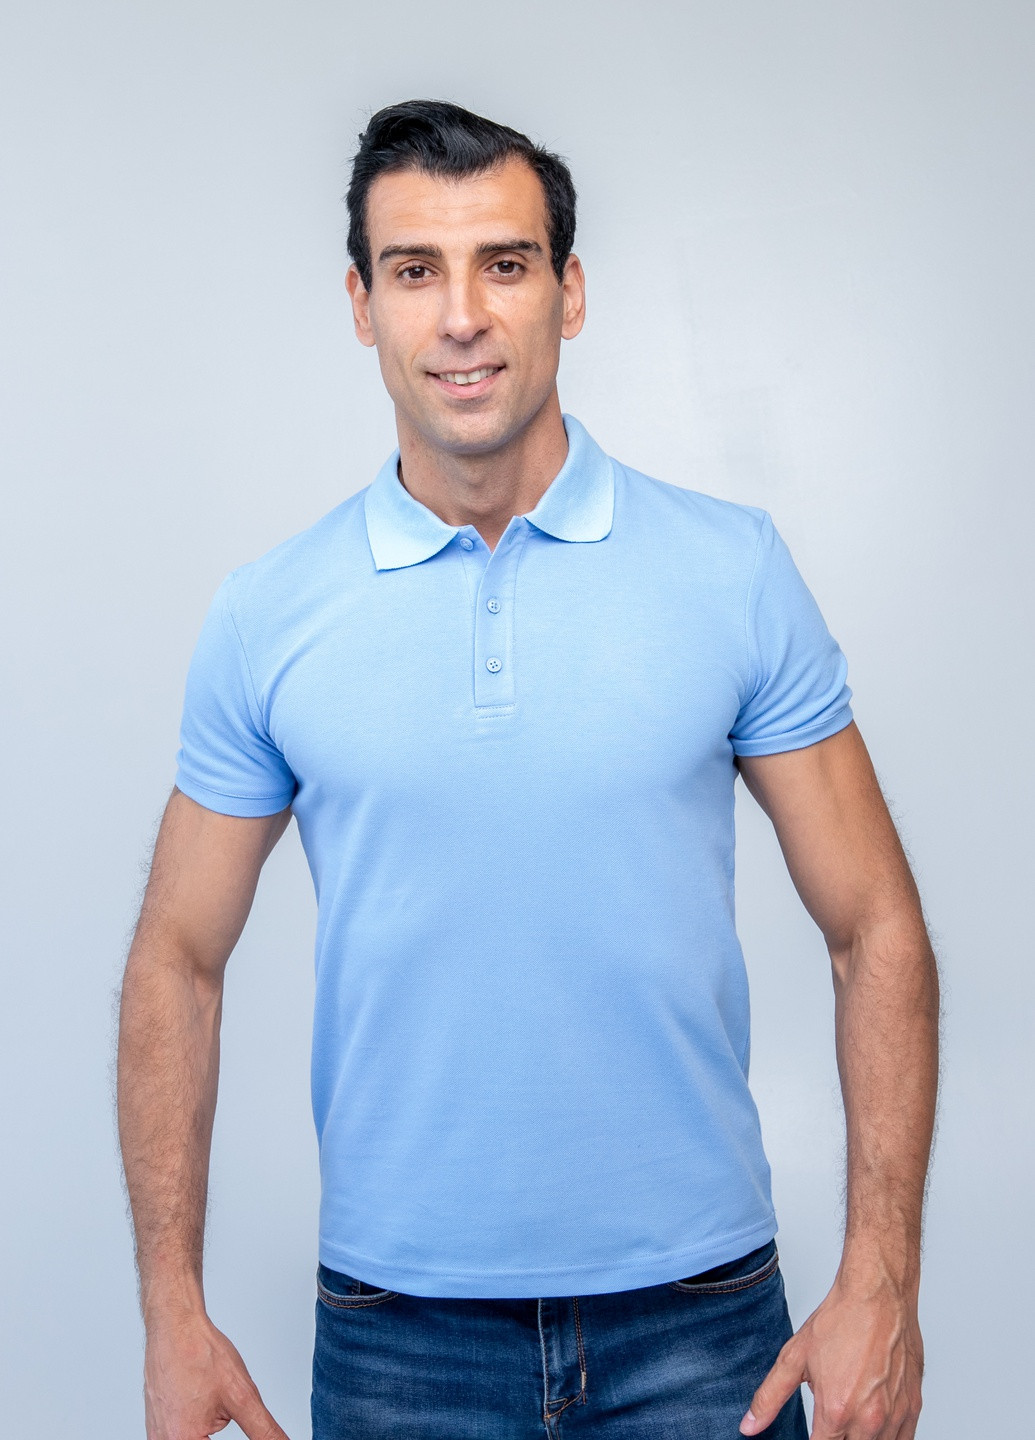 Голубой футболка-футболка поло чоловіча для мужчин TvoePolo однотонная